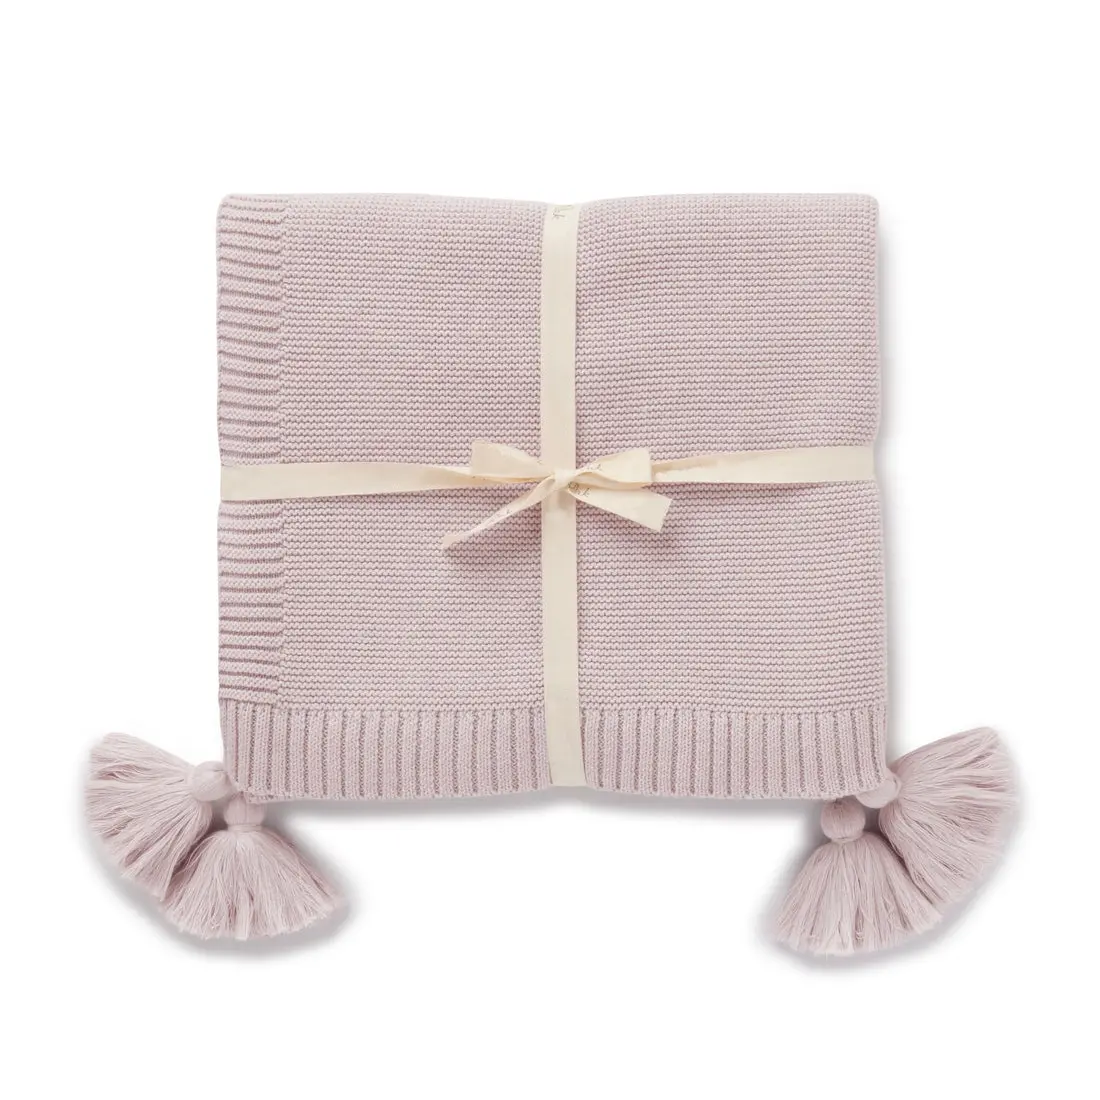 120X100Cm 100% cotone organico Super morbido lussuoso Chunky Knit Baby Shower regalo coperta fasciata per bambini